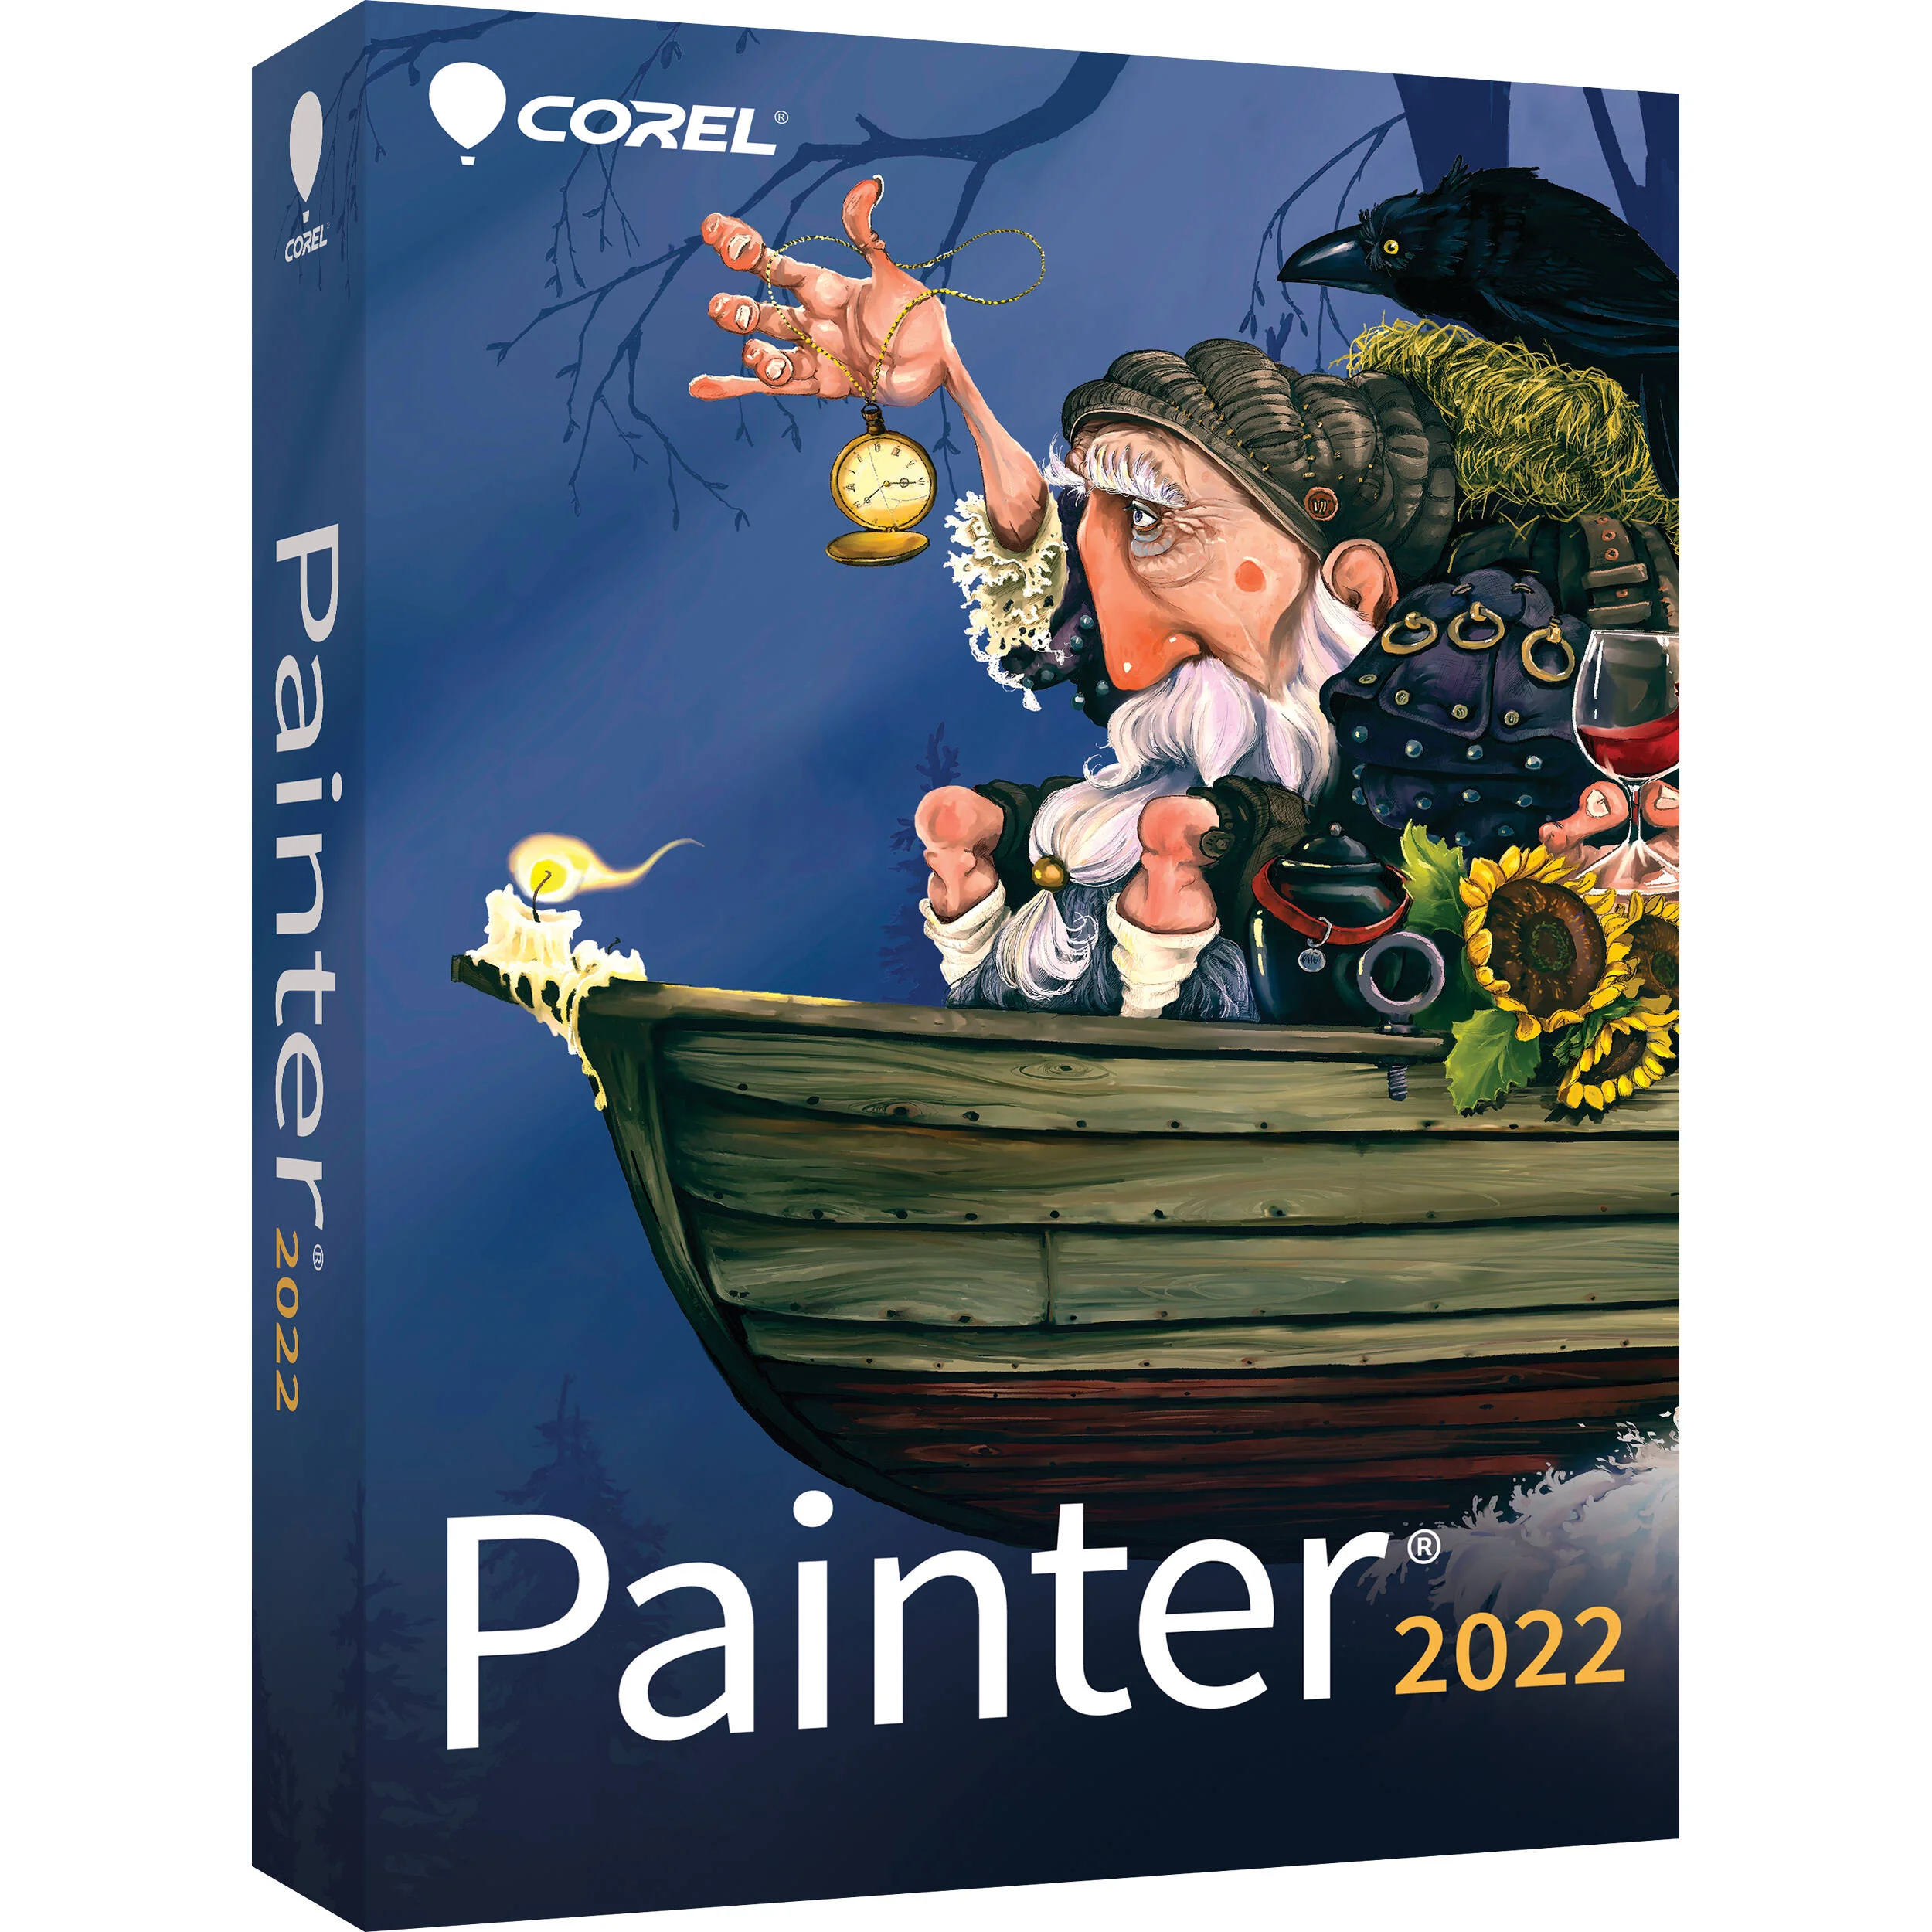 Corel painter full version free download